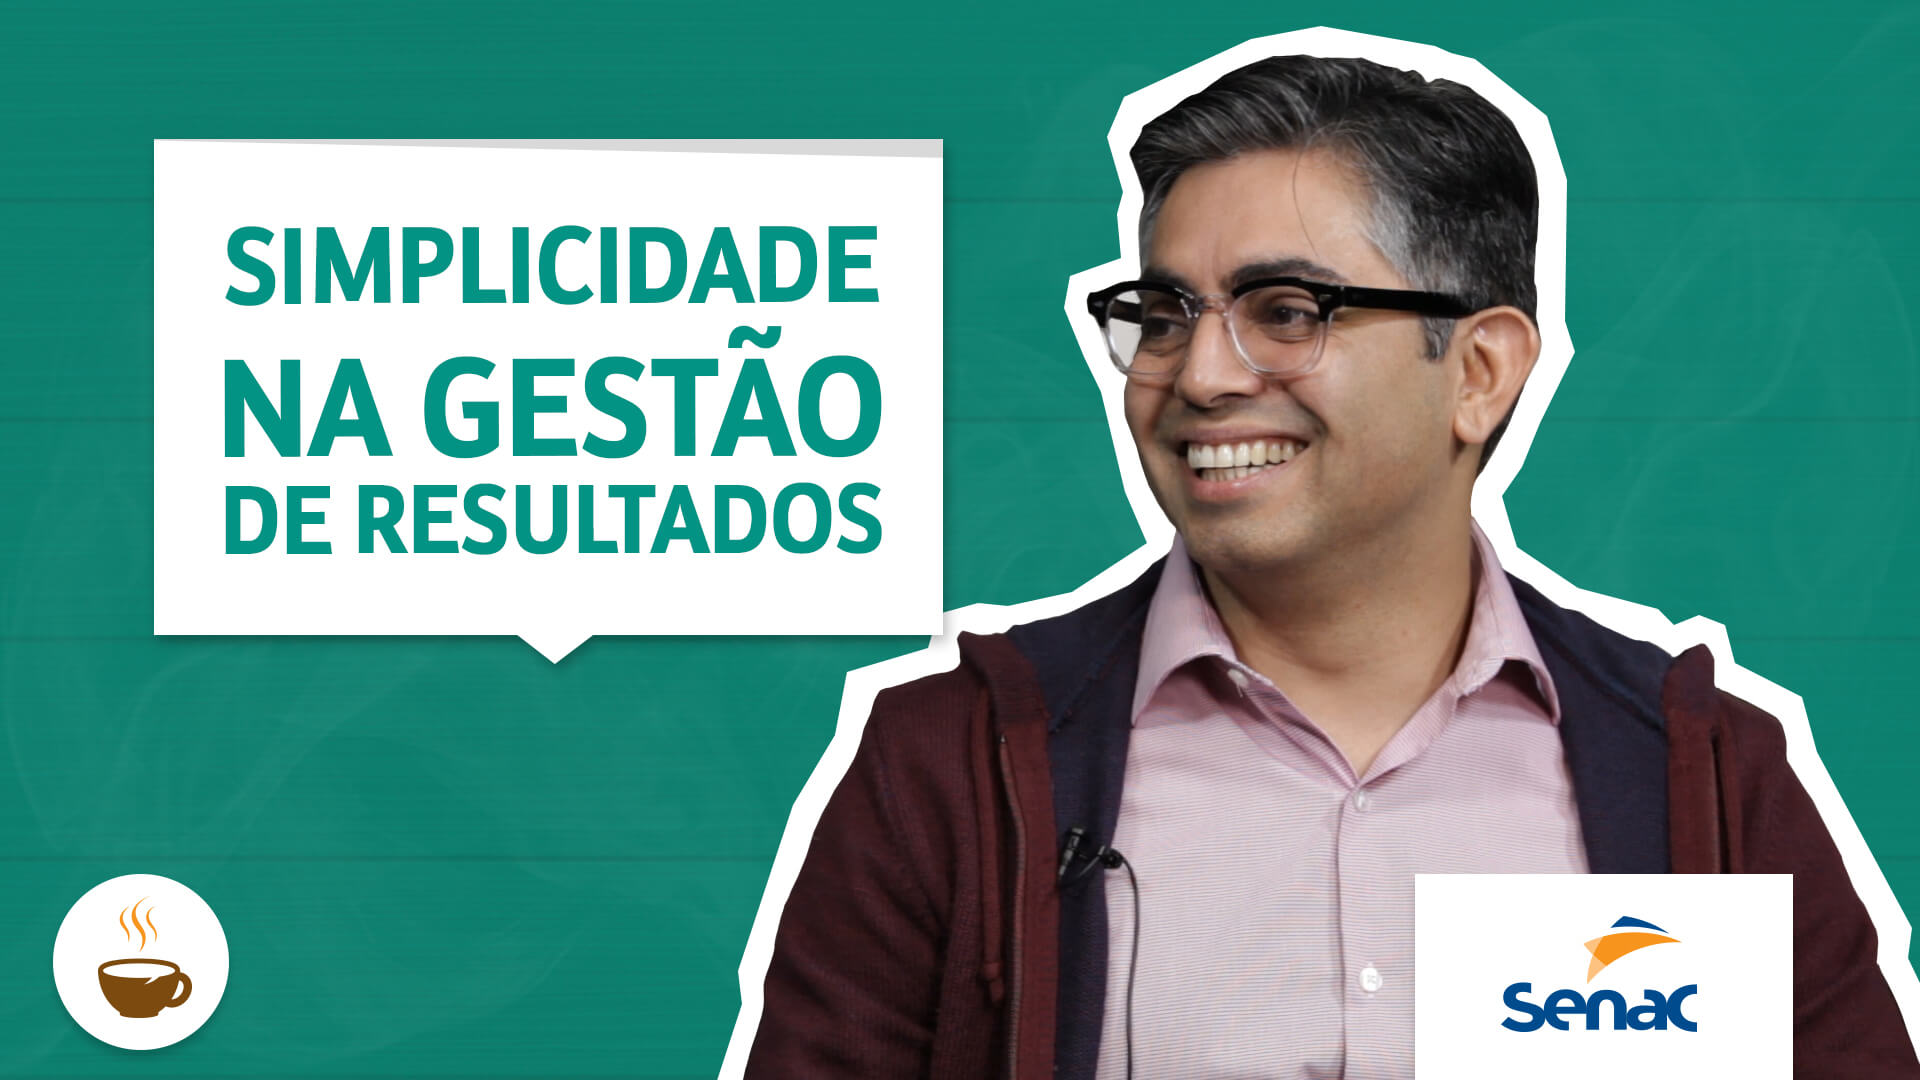 Mauricio Pedro do Senac São Paulo fala sobre Simplicidade na gestão de resultados 